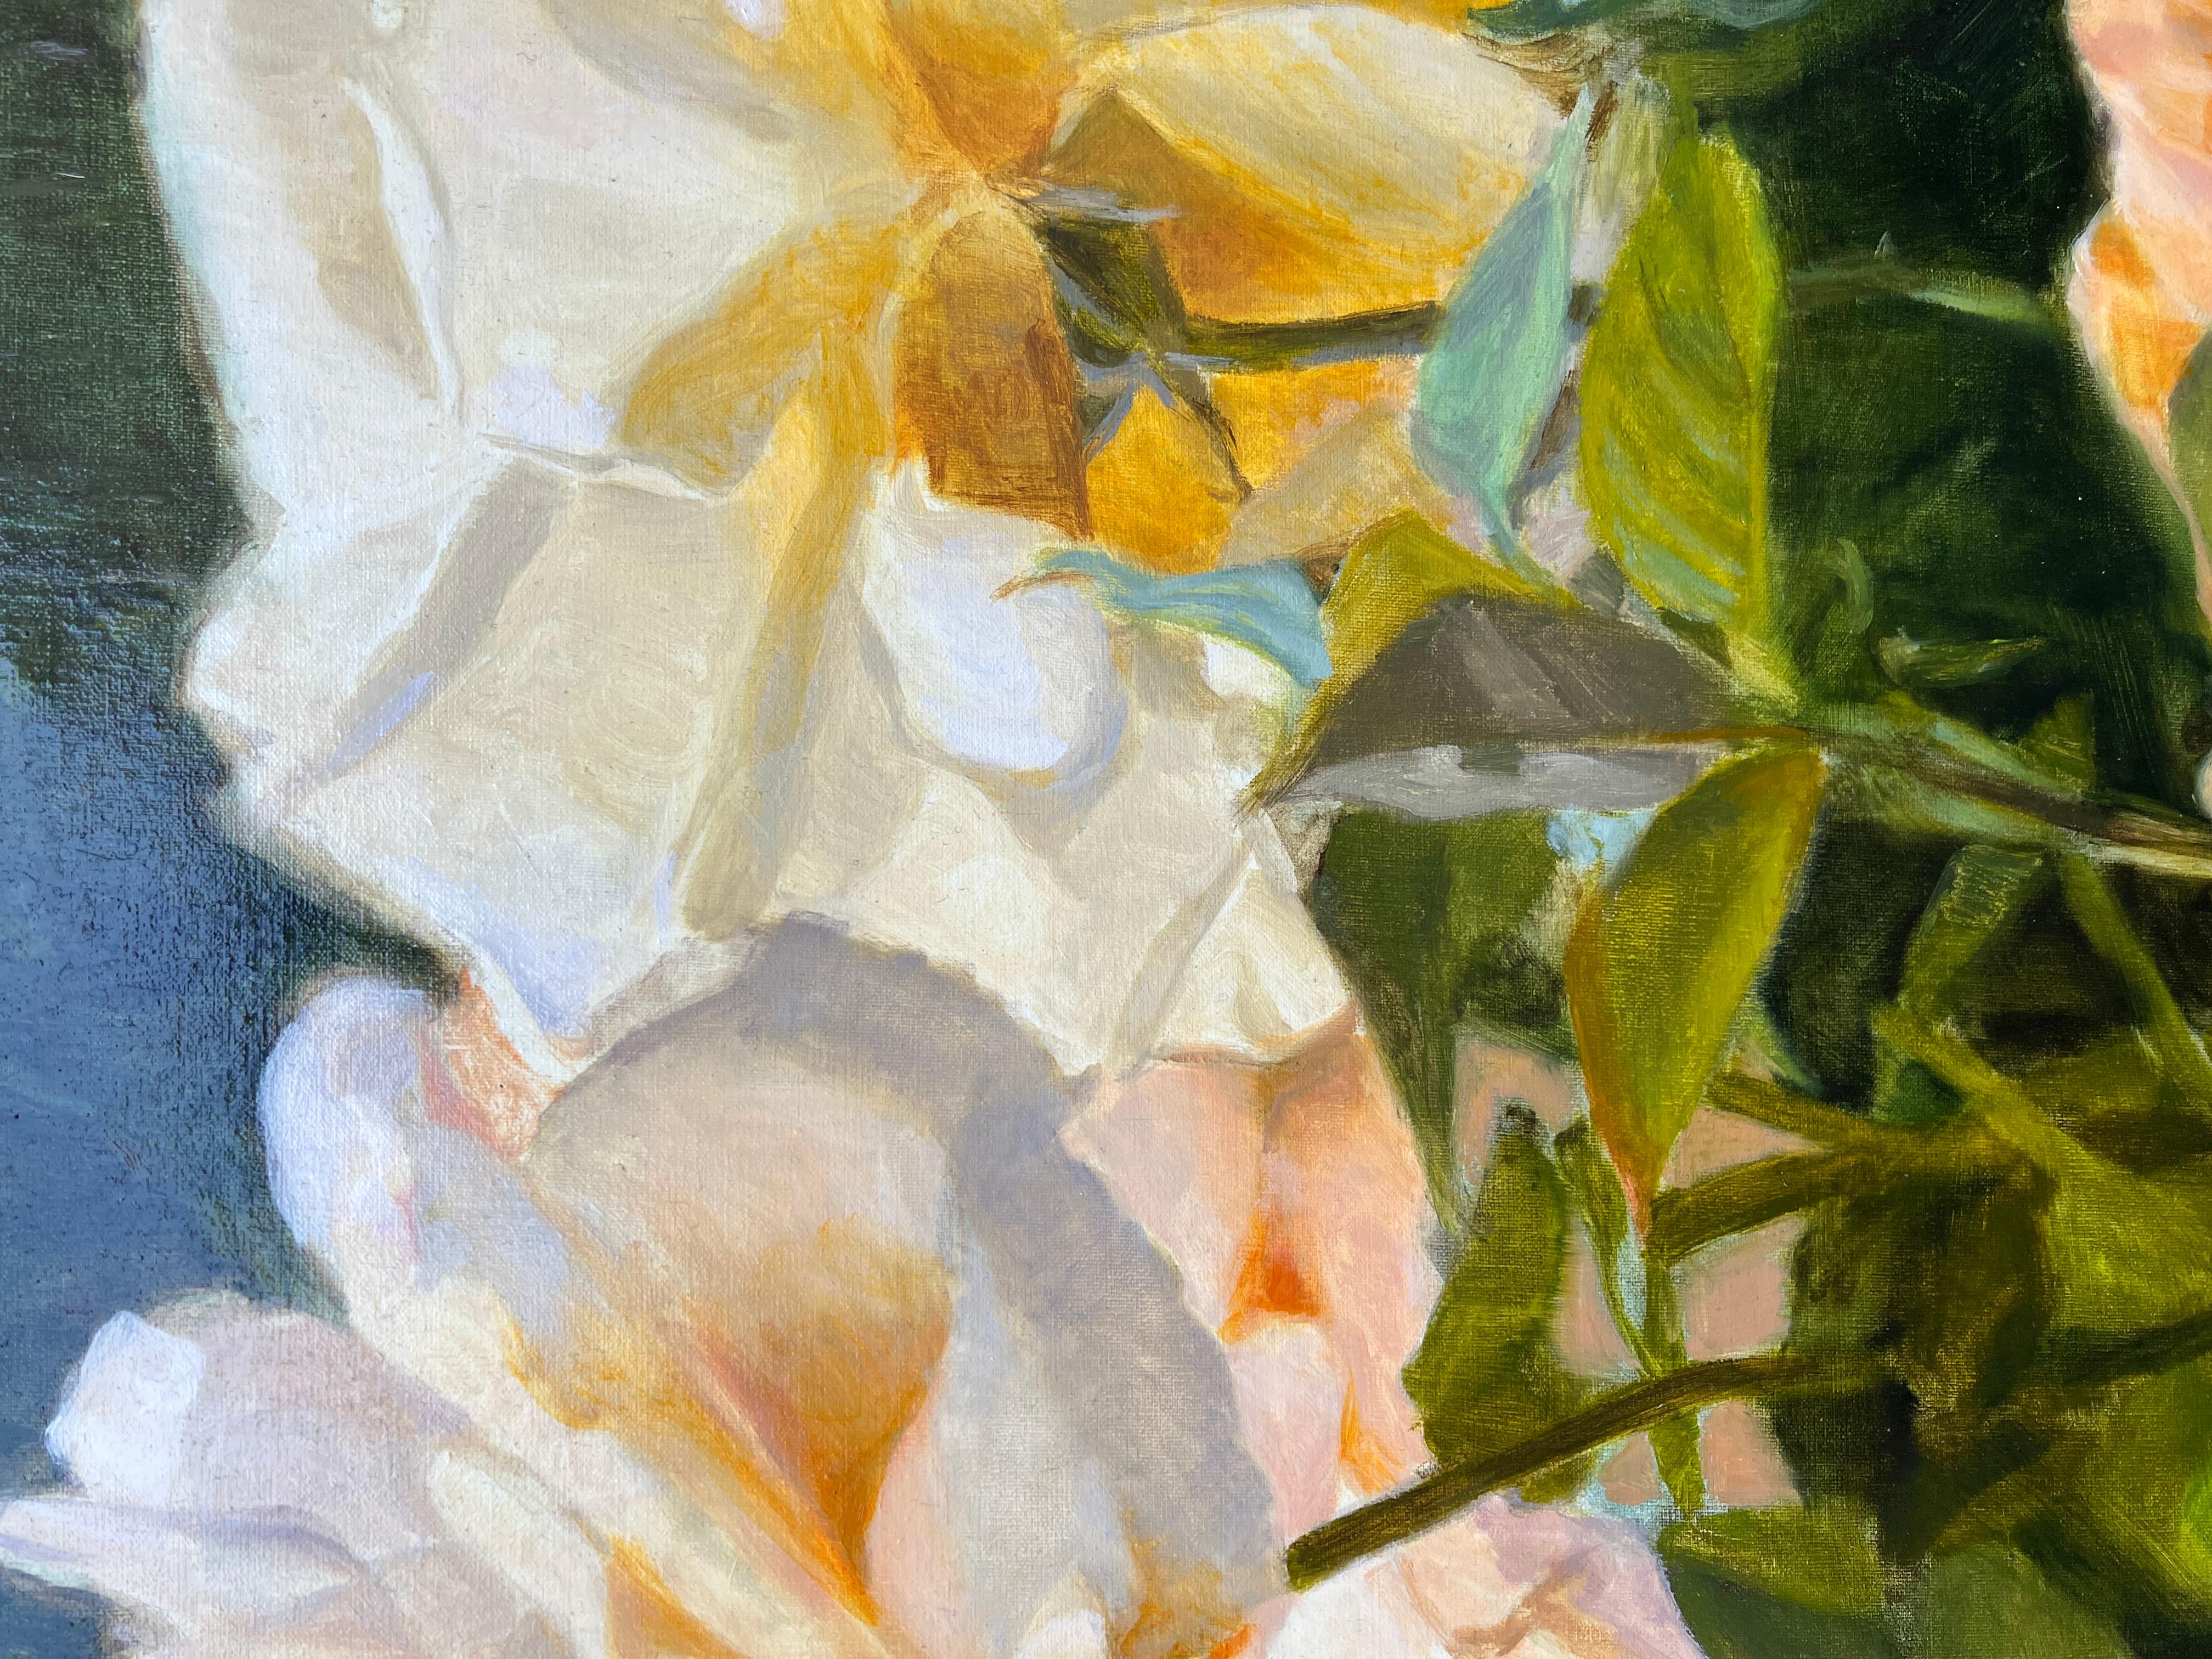 <p>Kommentare des Künstlers<br>Die weißen Rosen absorbieren das goldene Sonnenlicht und werfen einen gelben und pfirsichfarbenen Farbton auf ihre Blütenblätter. Die umliegenden Blätter bilden einen üppigen Hintergrund, der den Vintage-Charme der